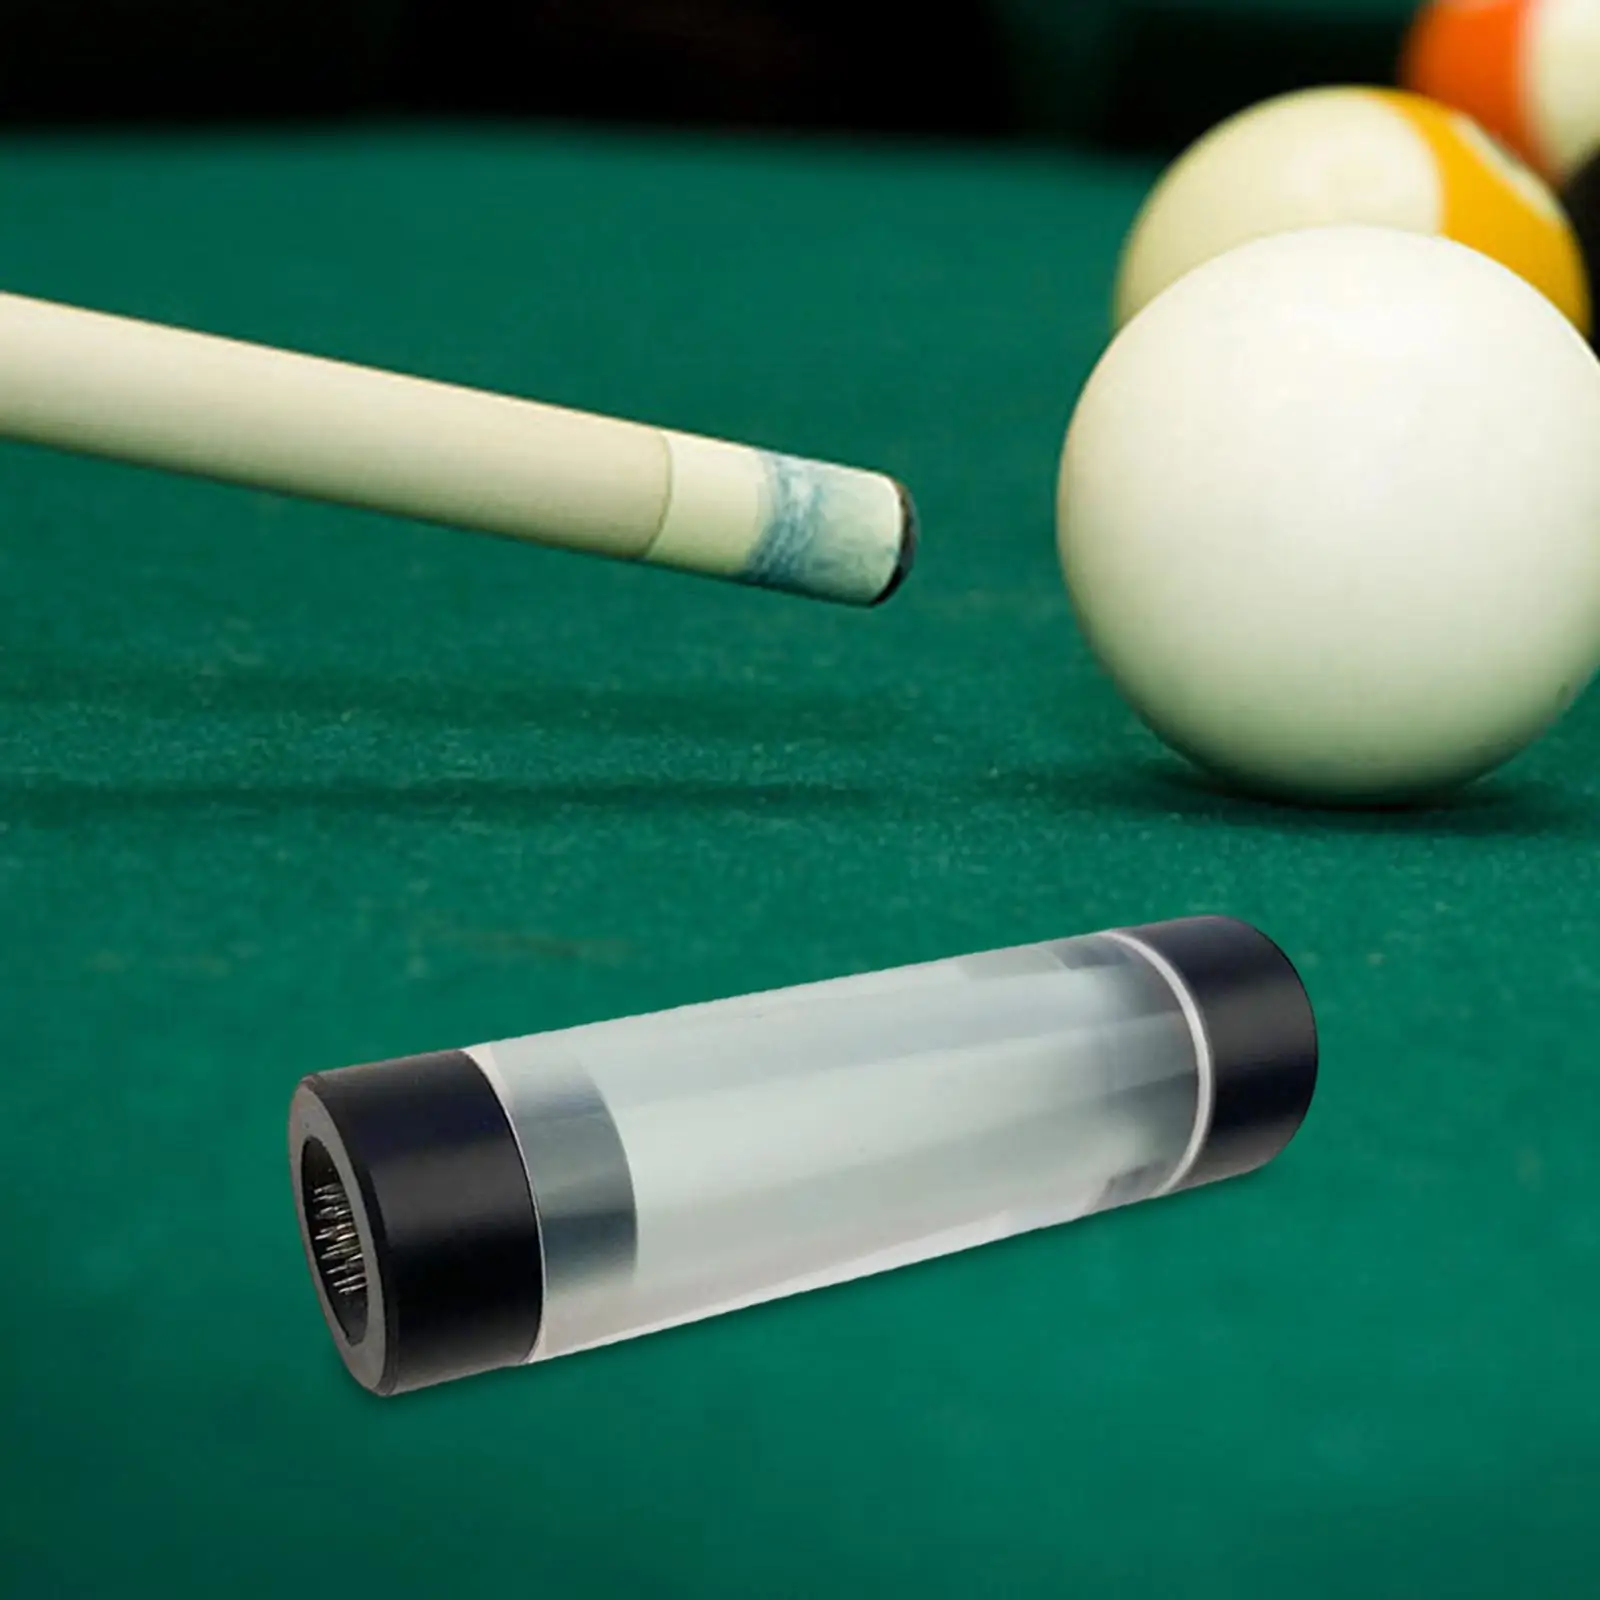 Billiard Pool Cue Tip Tool Pricker Portable Snooker Pool Cue Tip Shaper